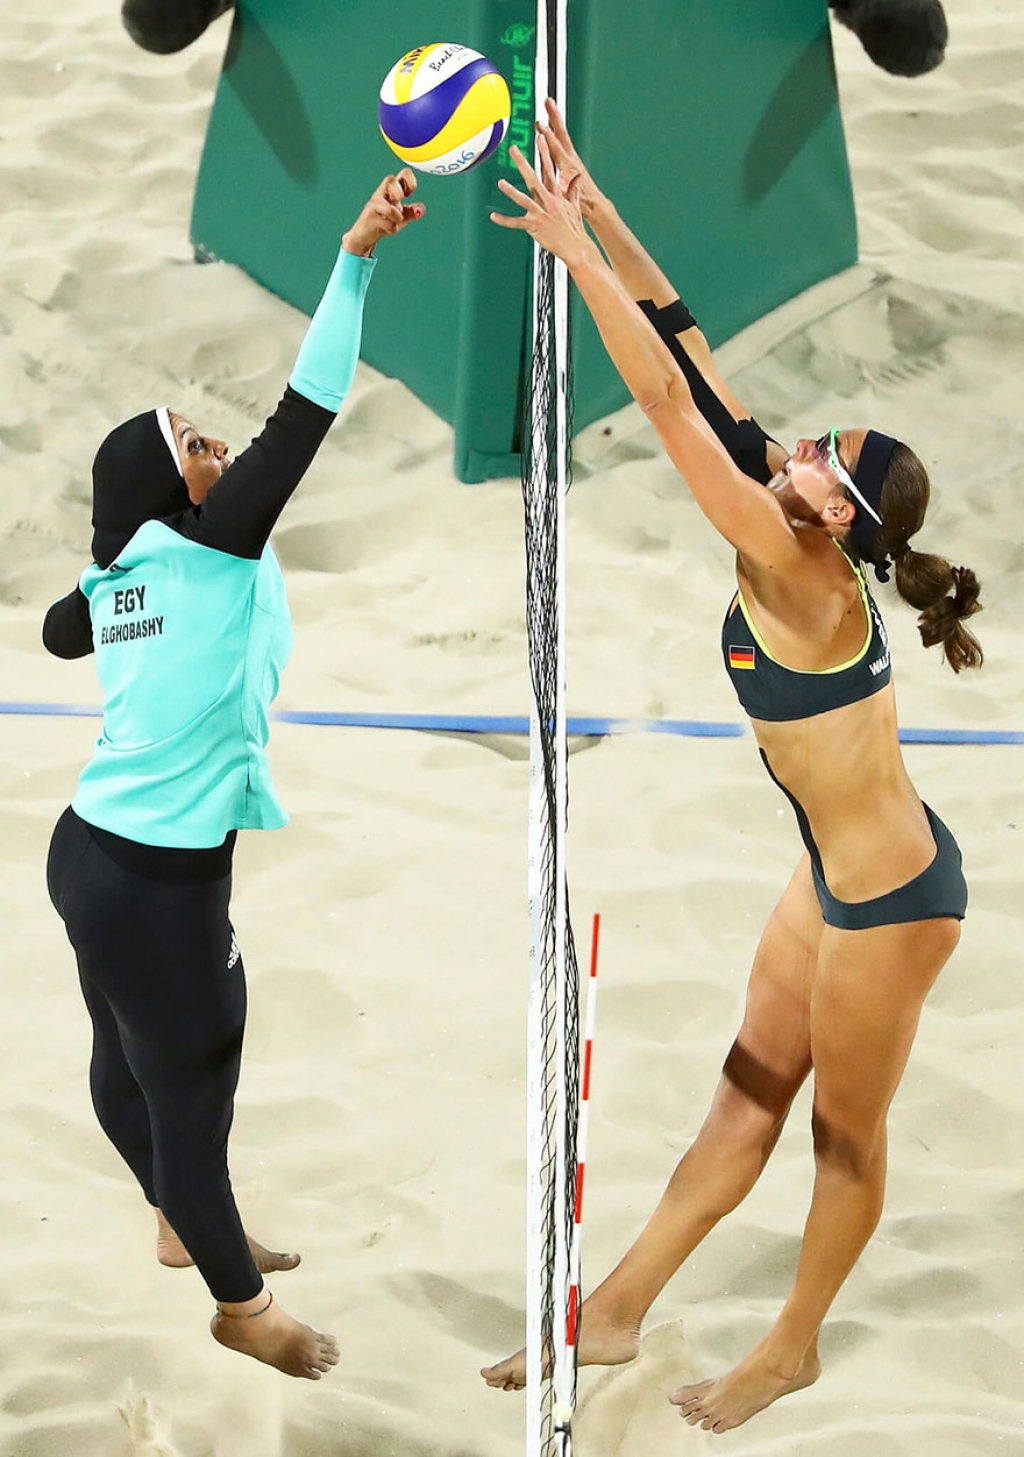 Diferenas culturais nas Olimpiadas